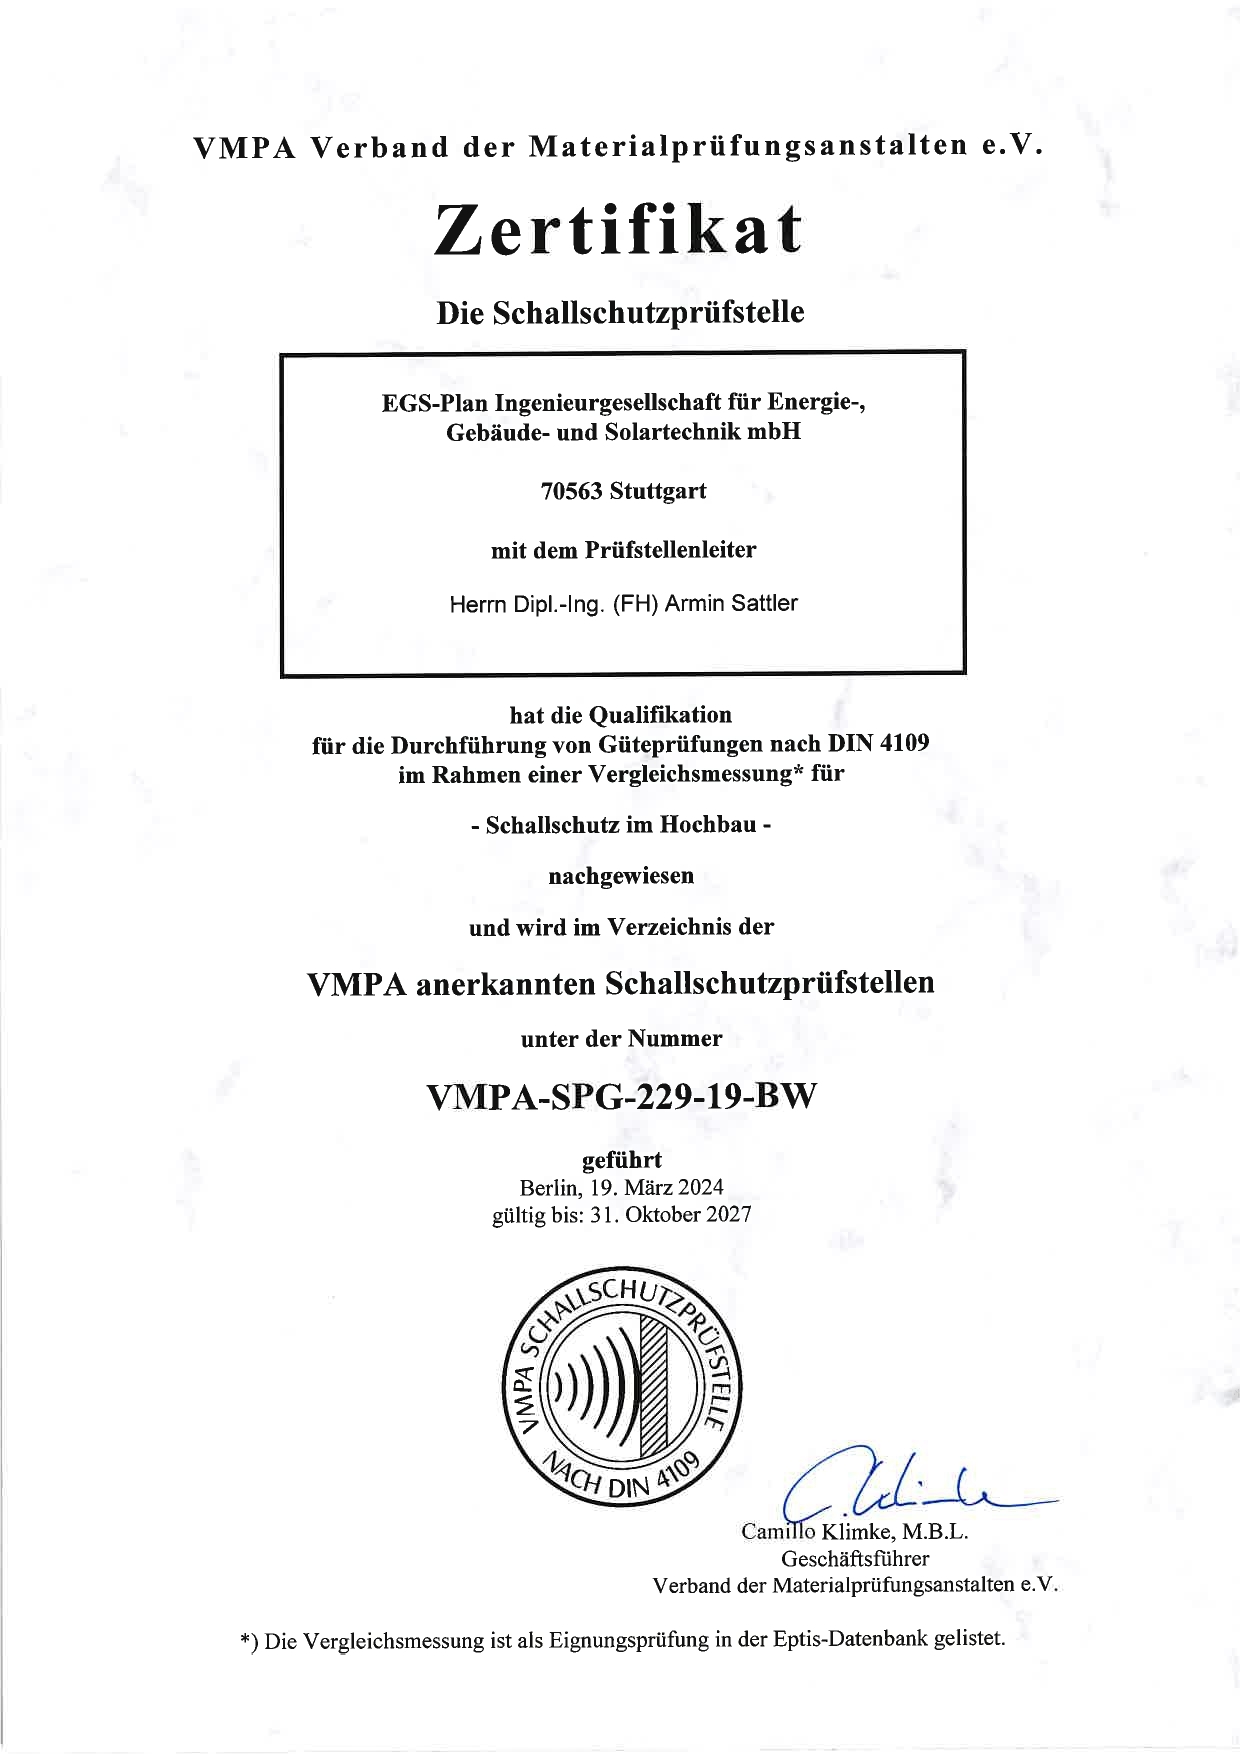 VMPA-Zertifikat Armin Sattler